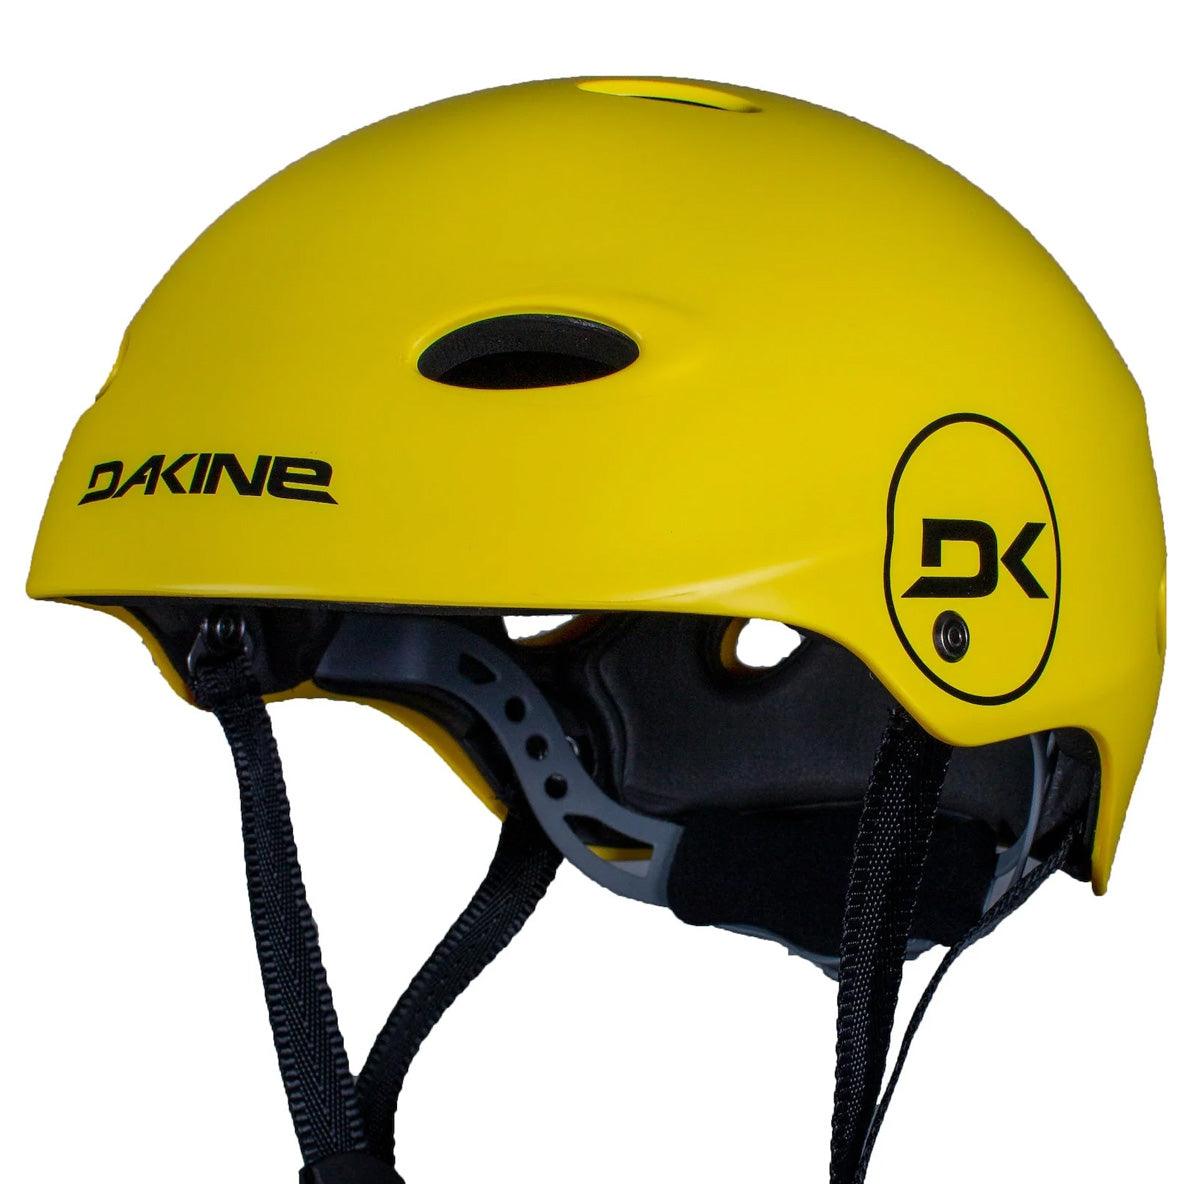 Dakine Renegade Helmet - Powerkiteshop